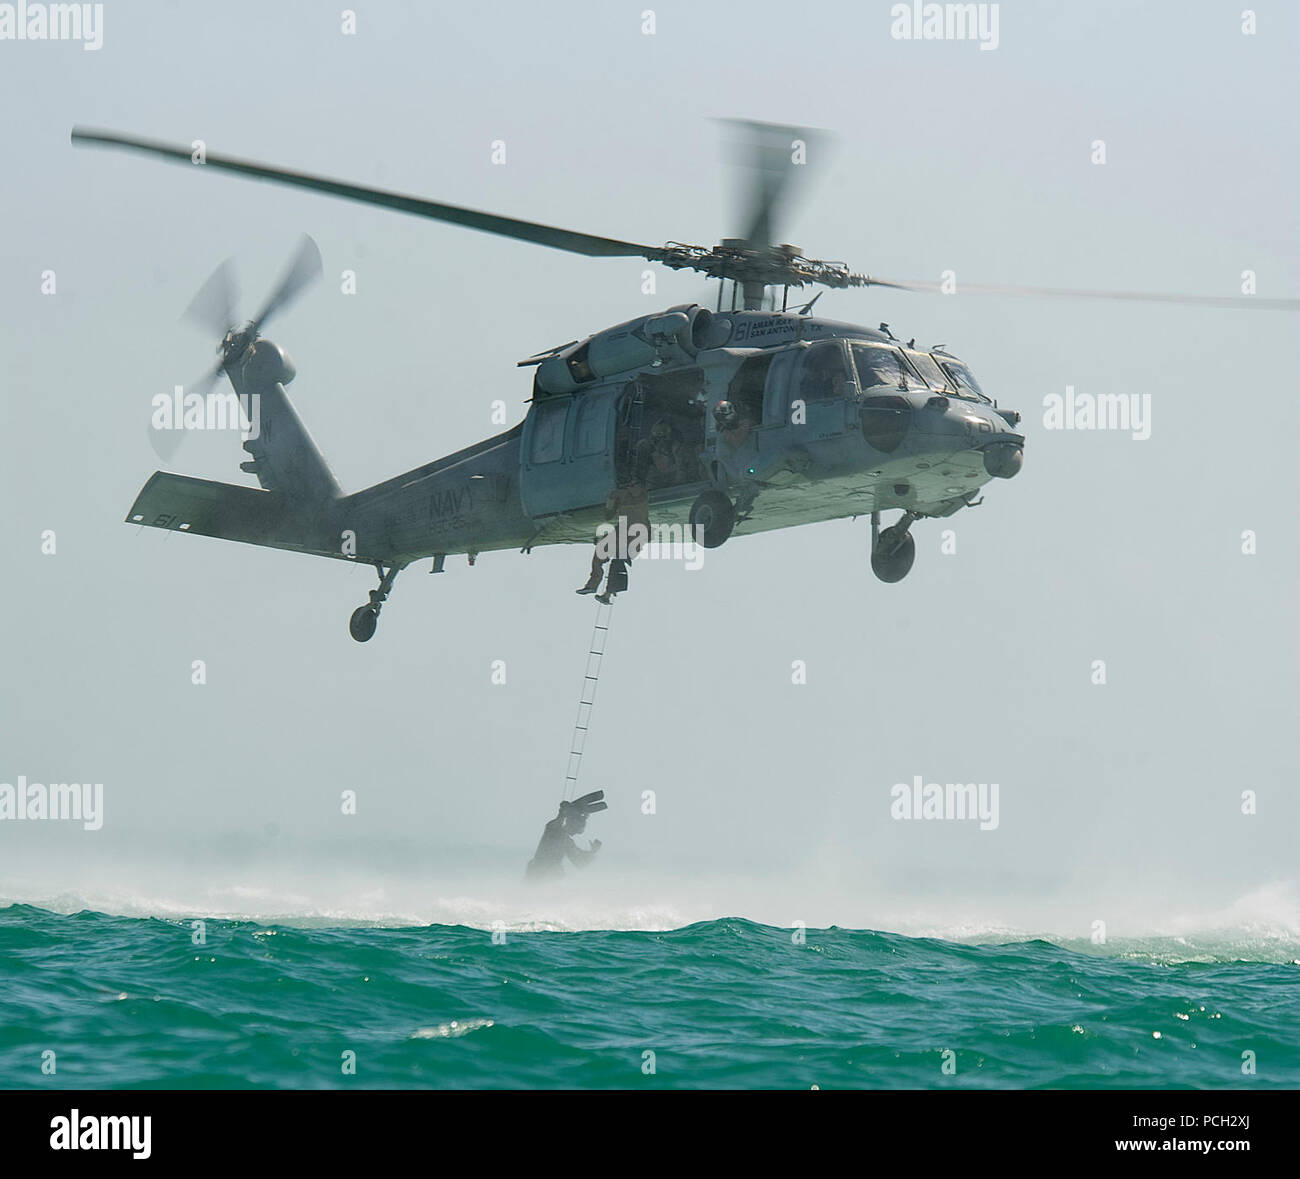 Arabischen Golf (4. Juni 2012) Segler für die Beseitigung von Explosivstoffen Mobile Einheit (EODMU) 2, eine Leiter in einem MH-60S Sea Hawk Hubschrauber Hubschrauber Meer Combat Squadron (HSC) 26 zugewiesen, während der Besetzung und recovery Training zugeordnet. EODMU-2 ist zu Commander Task Group (CTG) 56,1, die eine Mine counter-Maßnahme, Beseitigung von Explosivstoffen, Bergung - Tauchen zugeordnet, Terrorismusbekämpfung, und Schutz für die USA 5 Flotte. HSC-26 ist zum Kommandanten, Task Force (CTF) 53, das Kraftstoff und Nachschub zur US-Marine zugeordnet und Koalition Schiffe in den USA 5 Flotte Verantwortungsbereich. Stockfoto